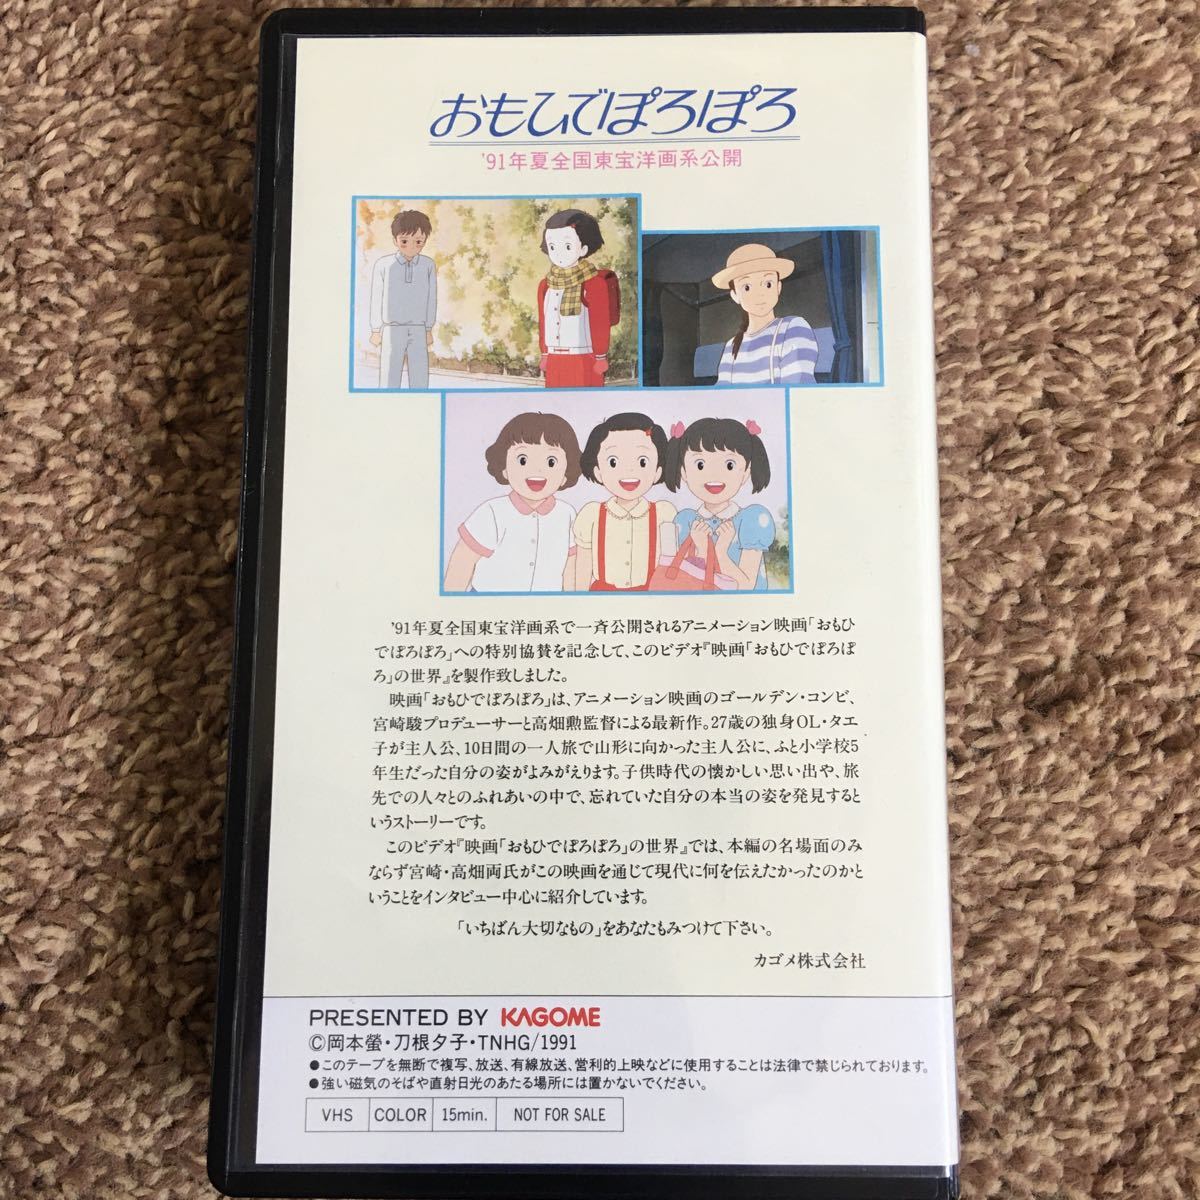 ビデオテープ/宮崎駿 おもひでぽろぽろの世界/非売品 KAGOME スタジオジブリ VHS_画像2